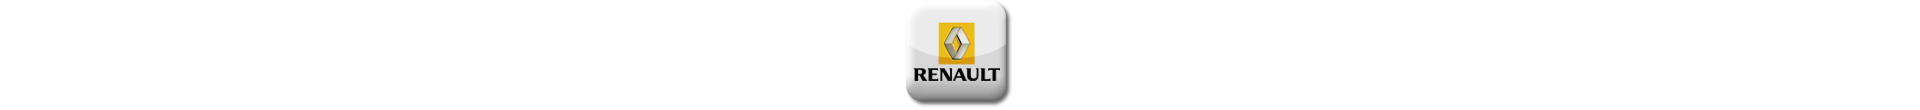 Boitier additionnel Renault Diesel Evolussem